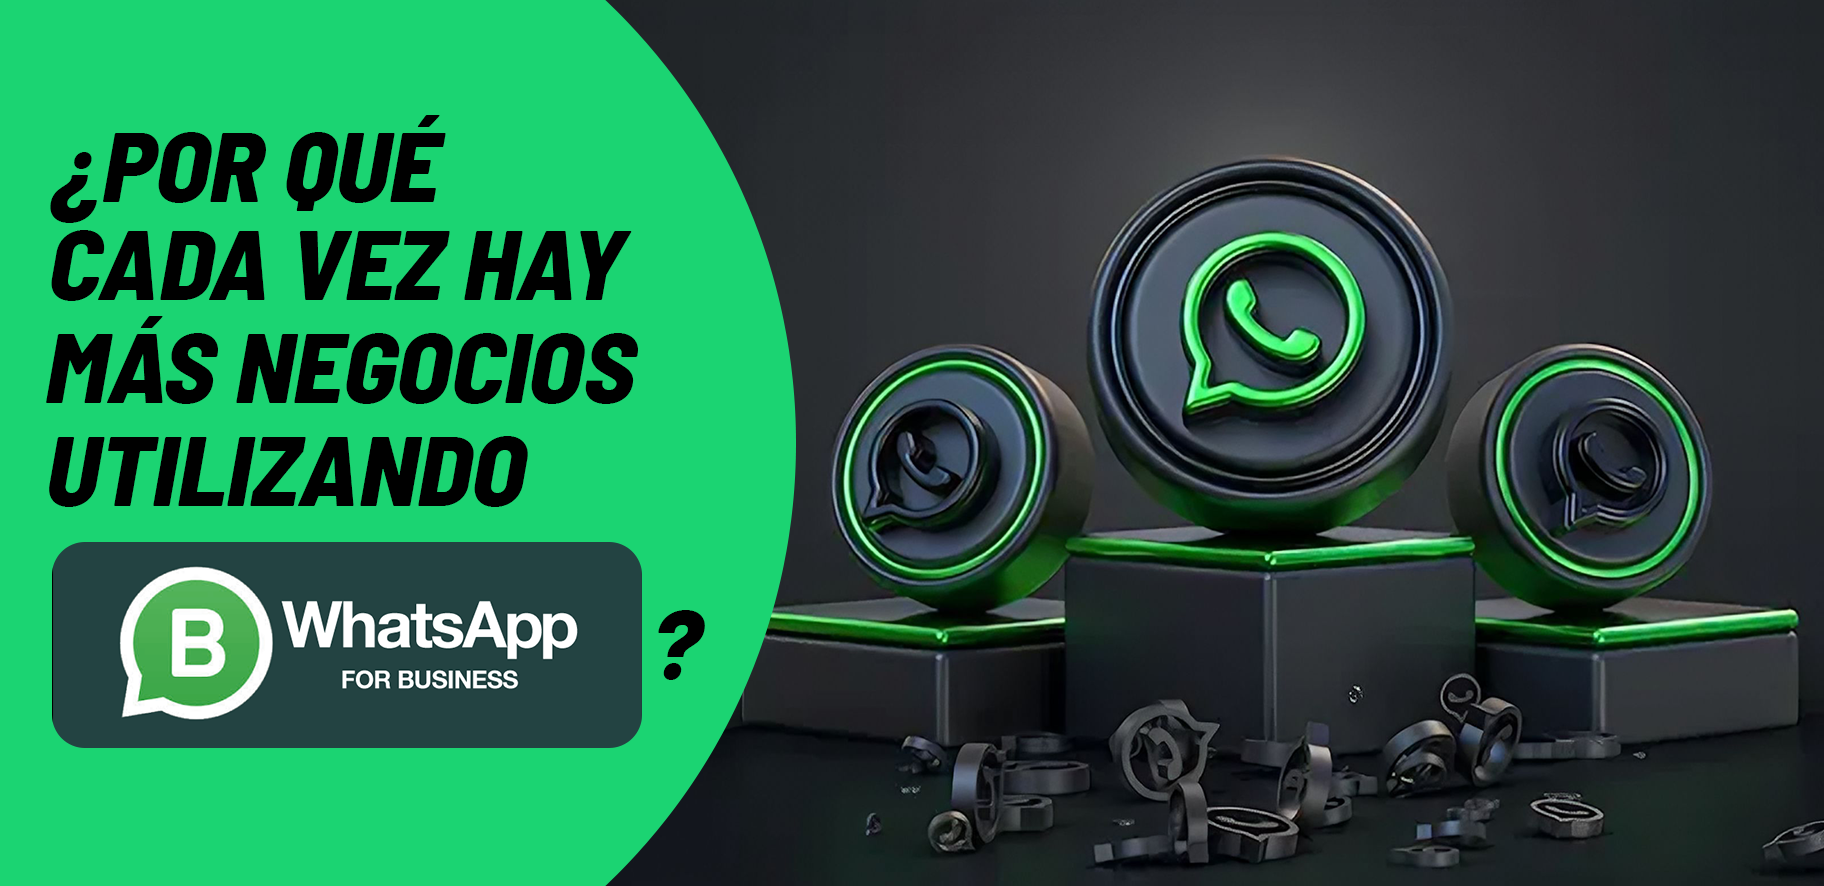 ¿Por qué cada vez hay más negocios utilizando WhatsApp Business? 